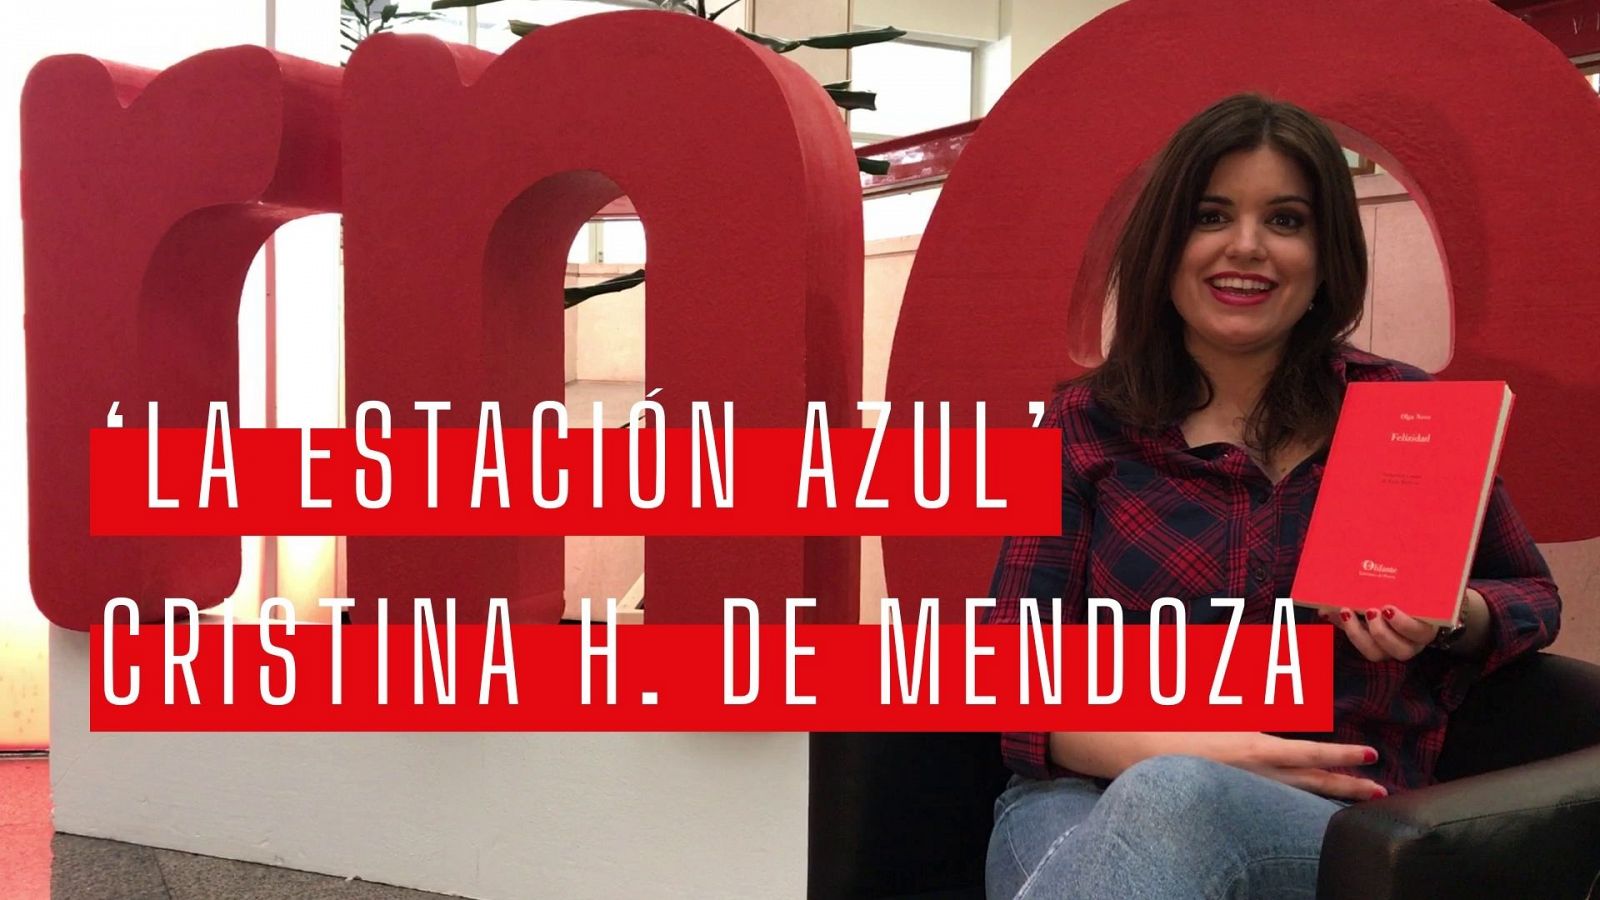 La estación azul - Día del libro: las recomendaciones literarias de Cristina Hermoso de Mendoza - Ver ahora